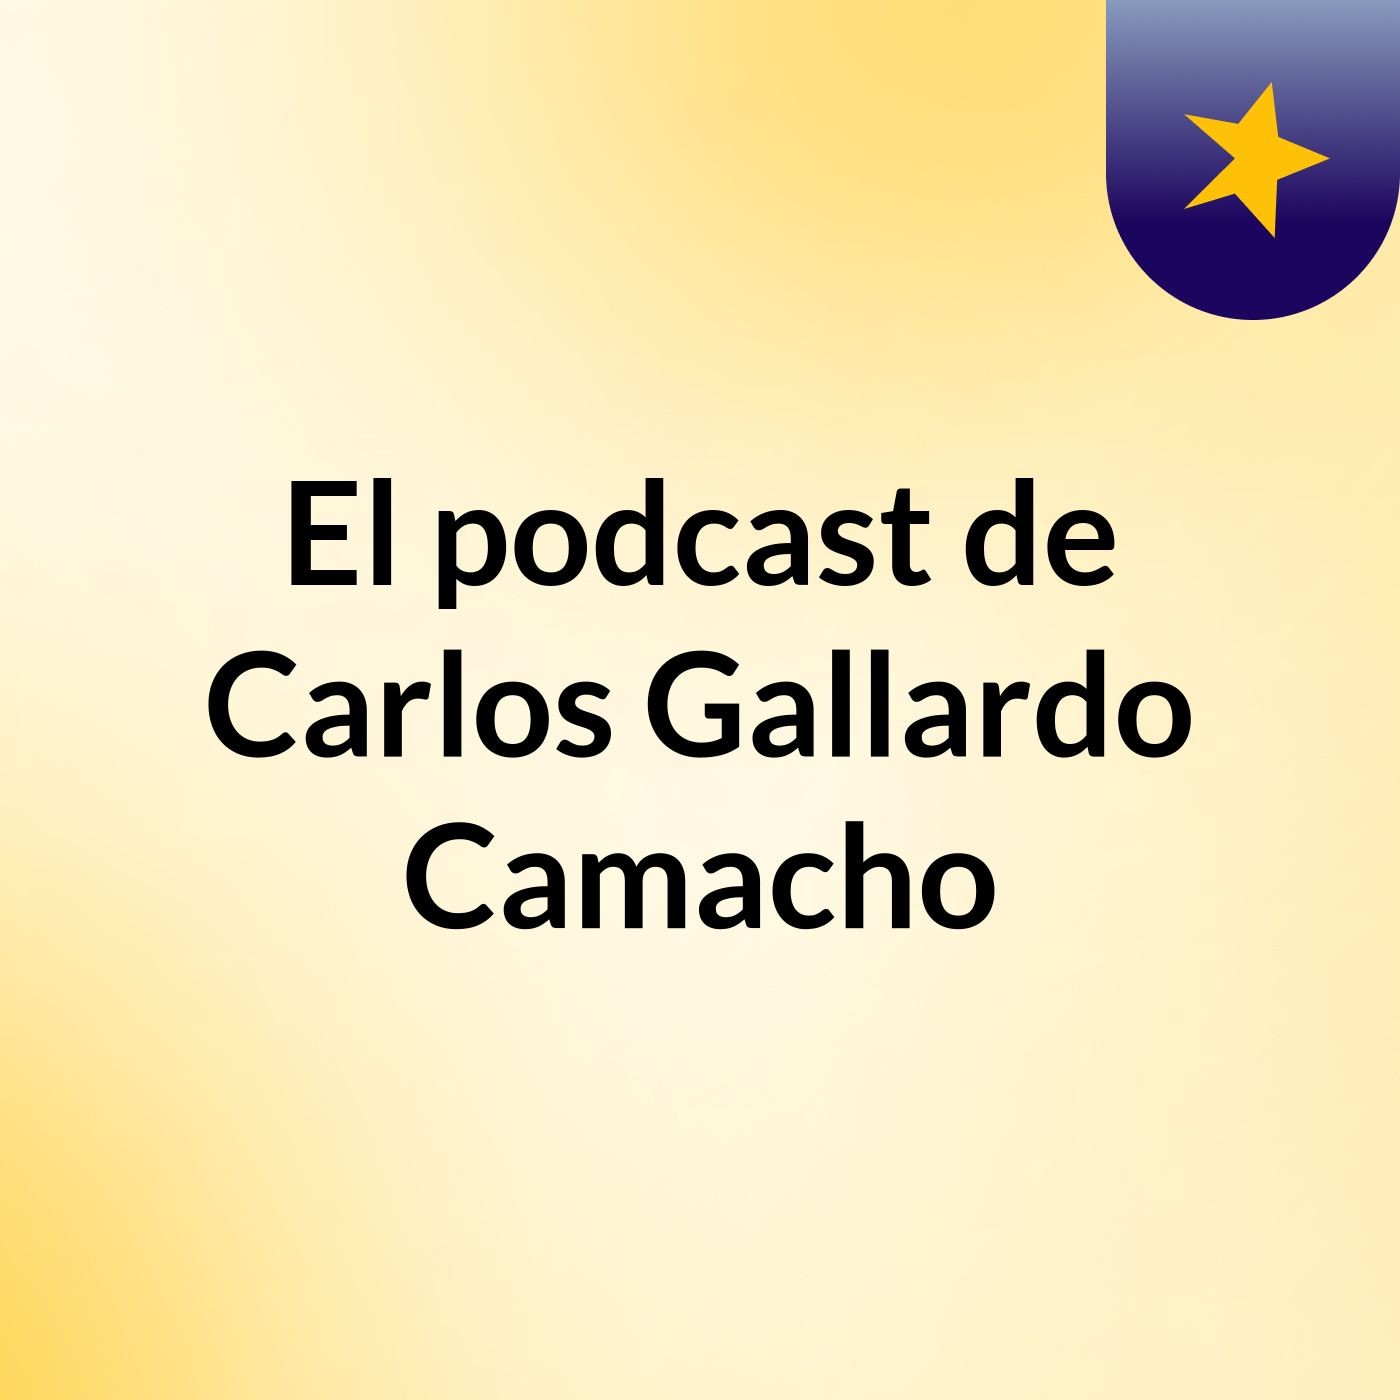 El podcast de Carlos Gallardo Camacho